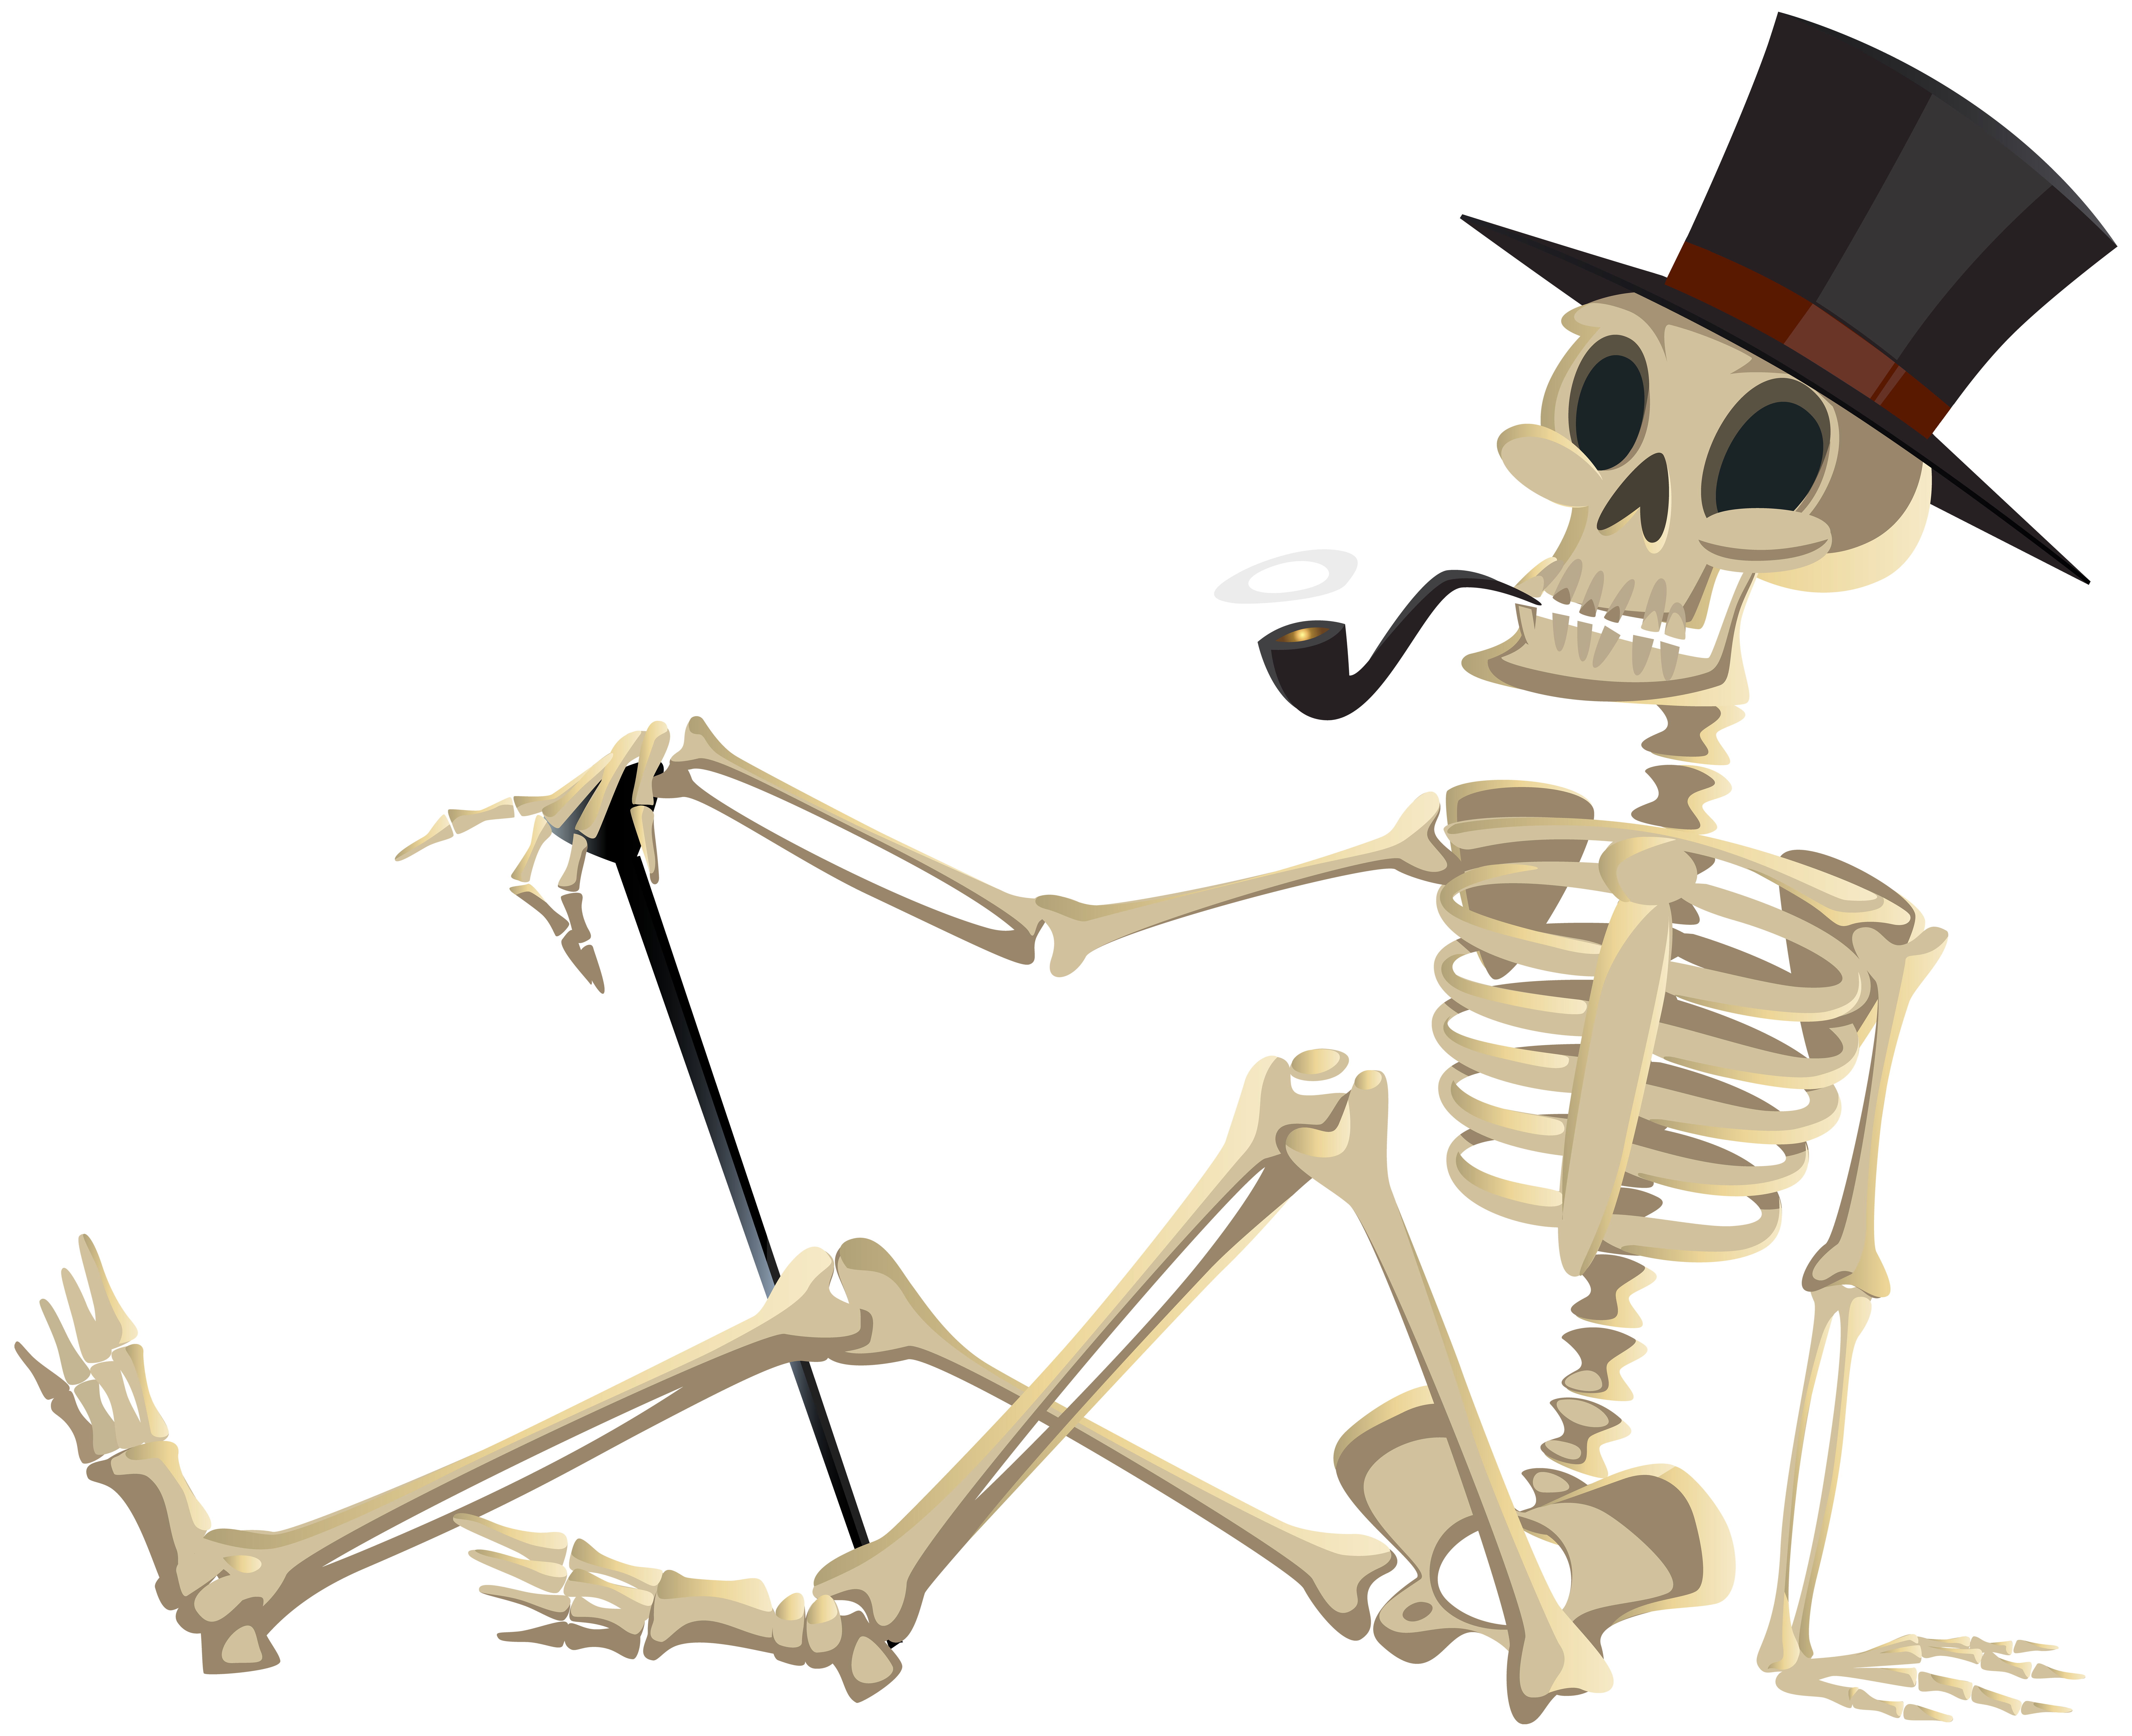 clipart skeleton